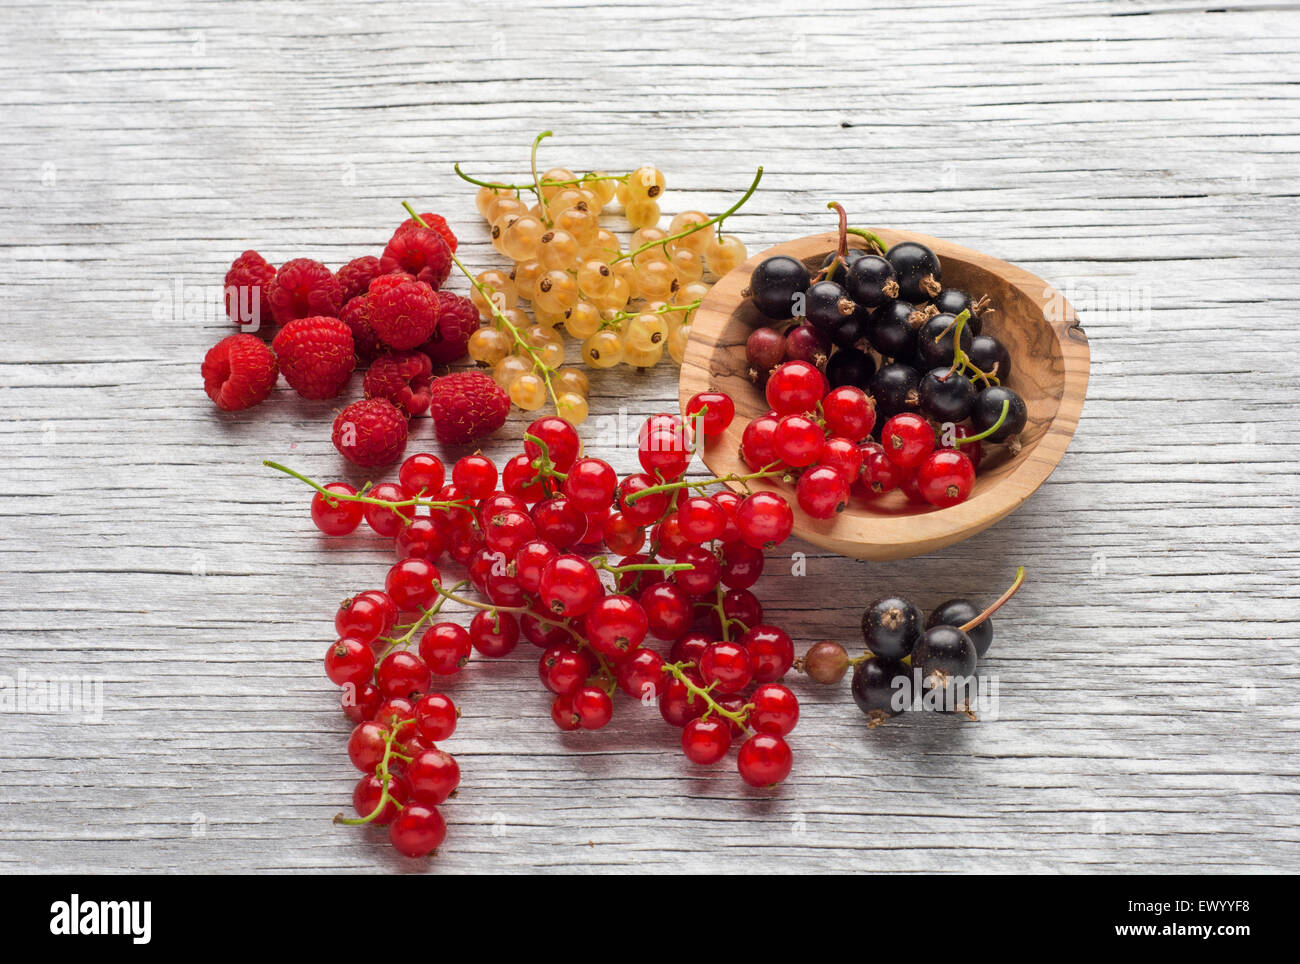 L'été savoureux fruits sur une table en bois. les framboises, mûre, de cassis Banque D'Images